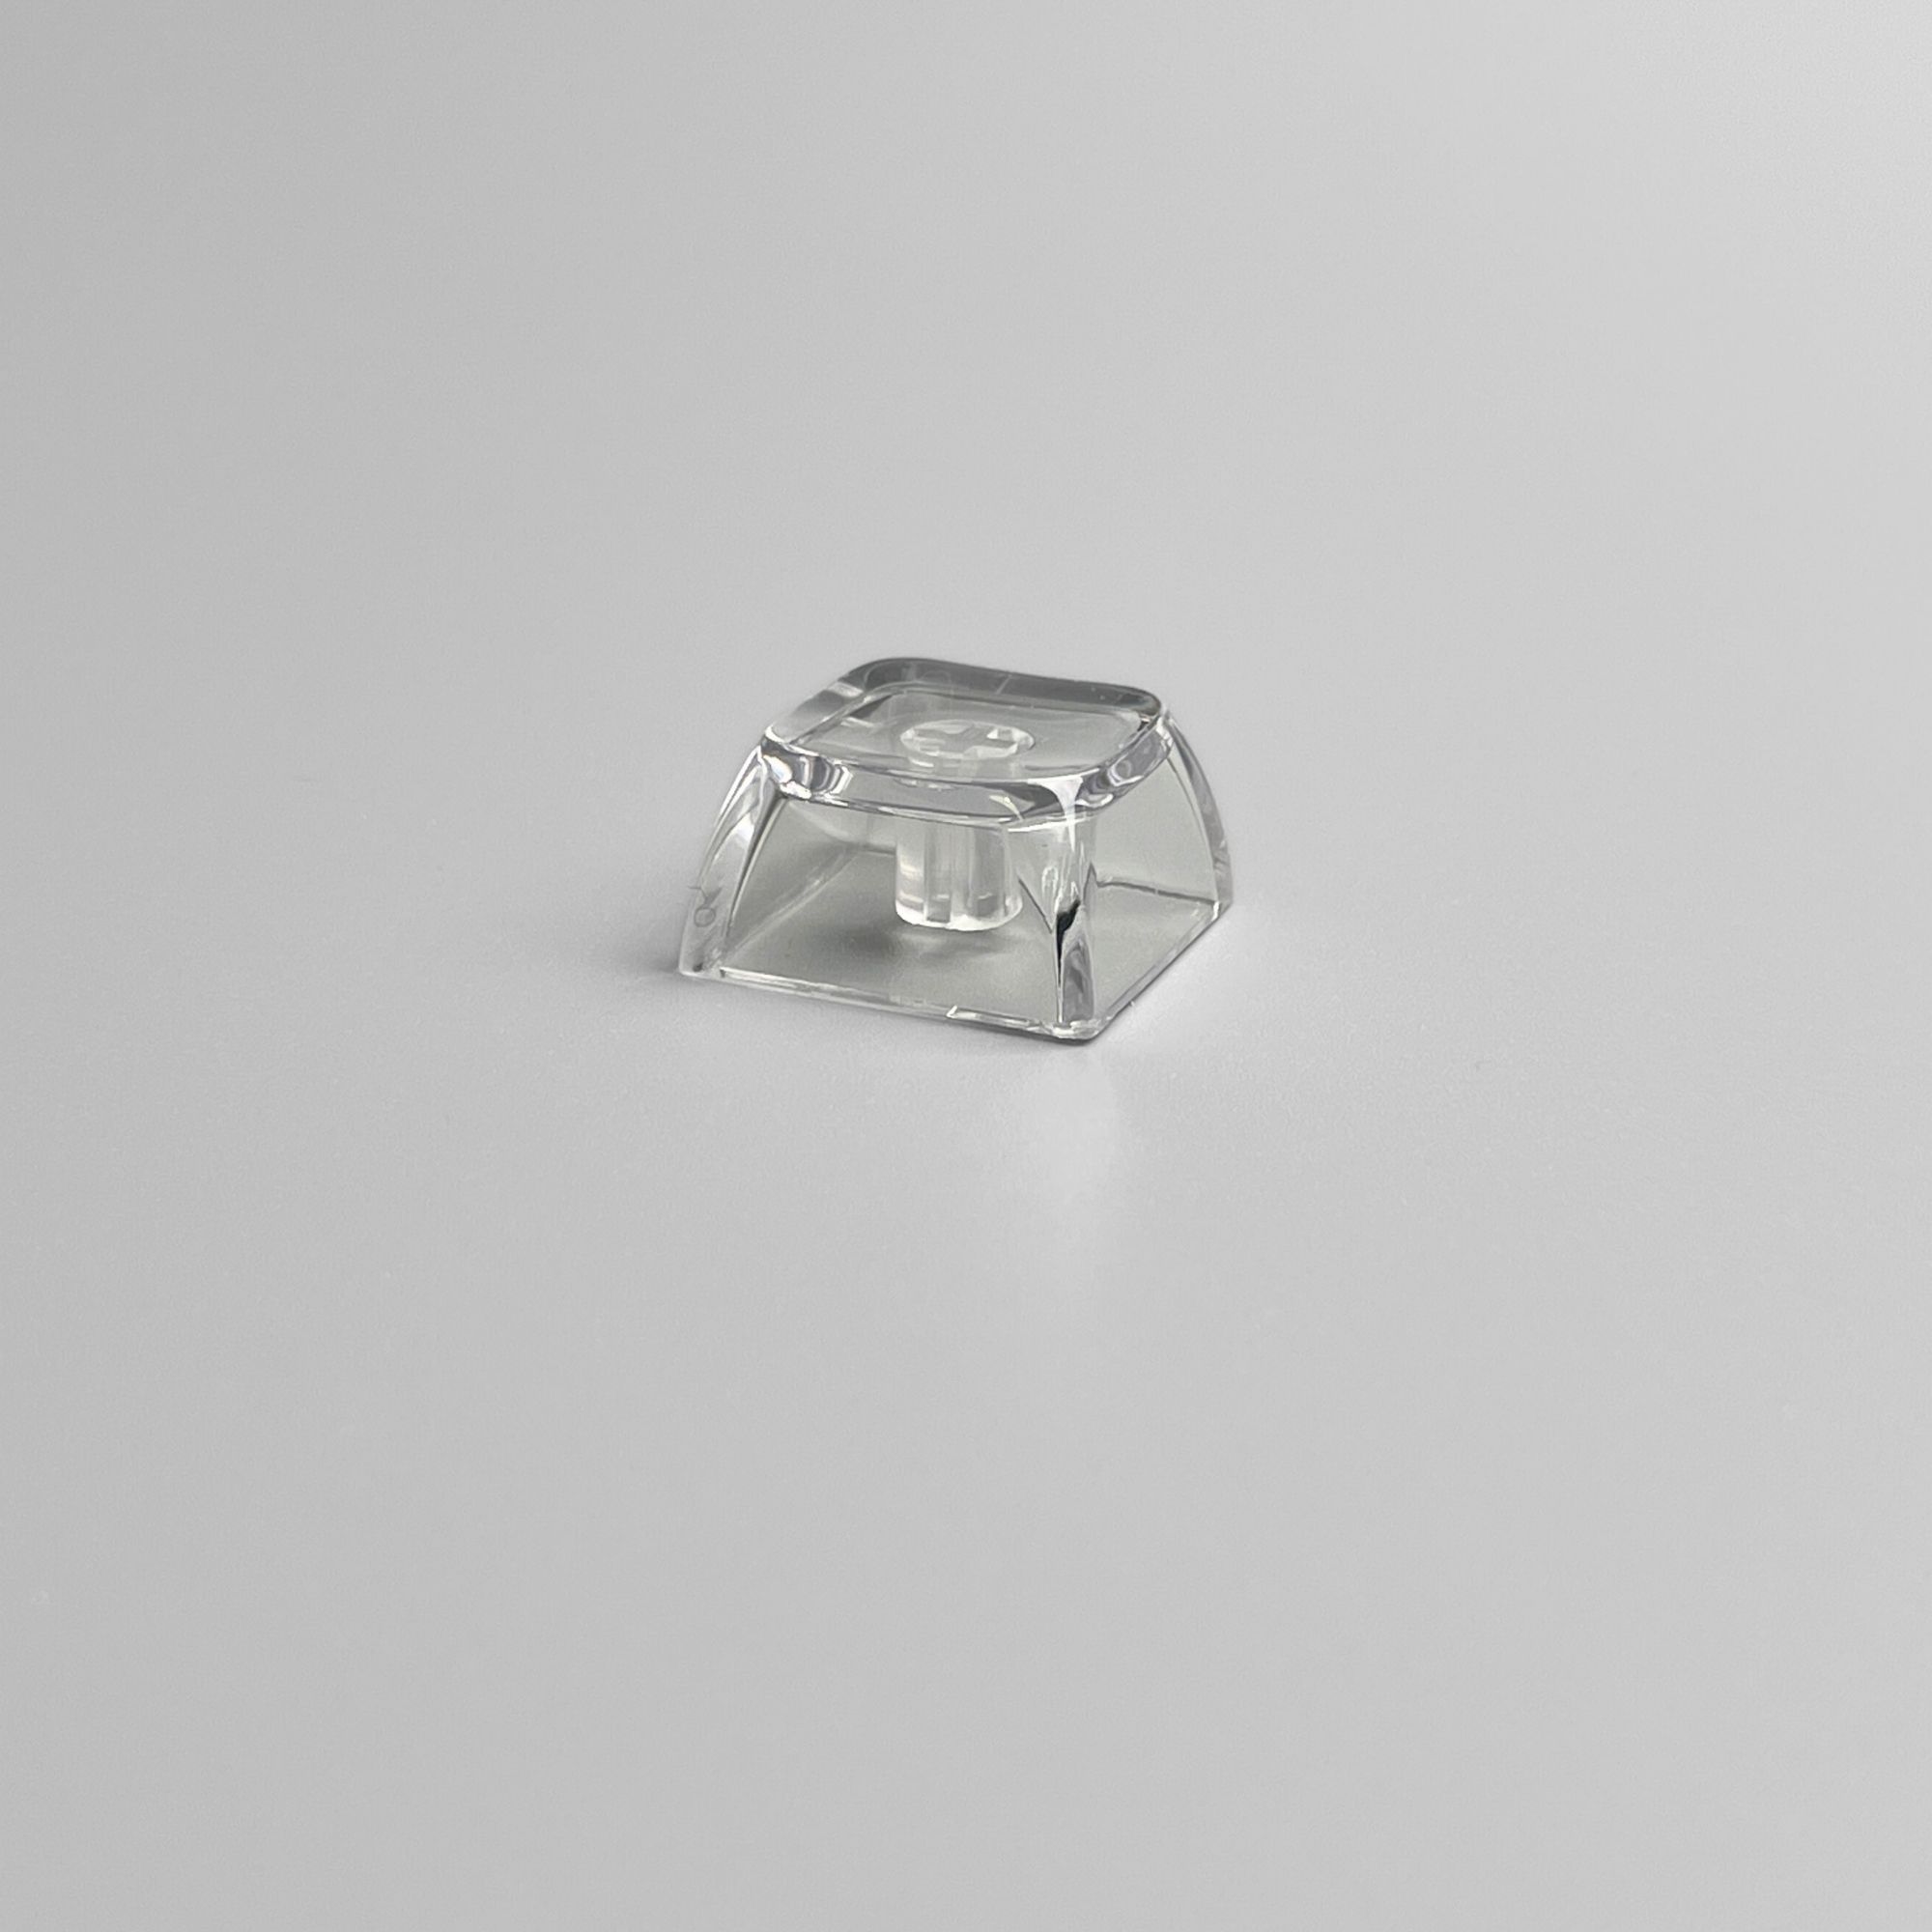 XDA Transparent Clear Keycap Glass-like Keycap